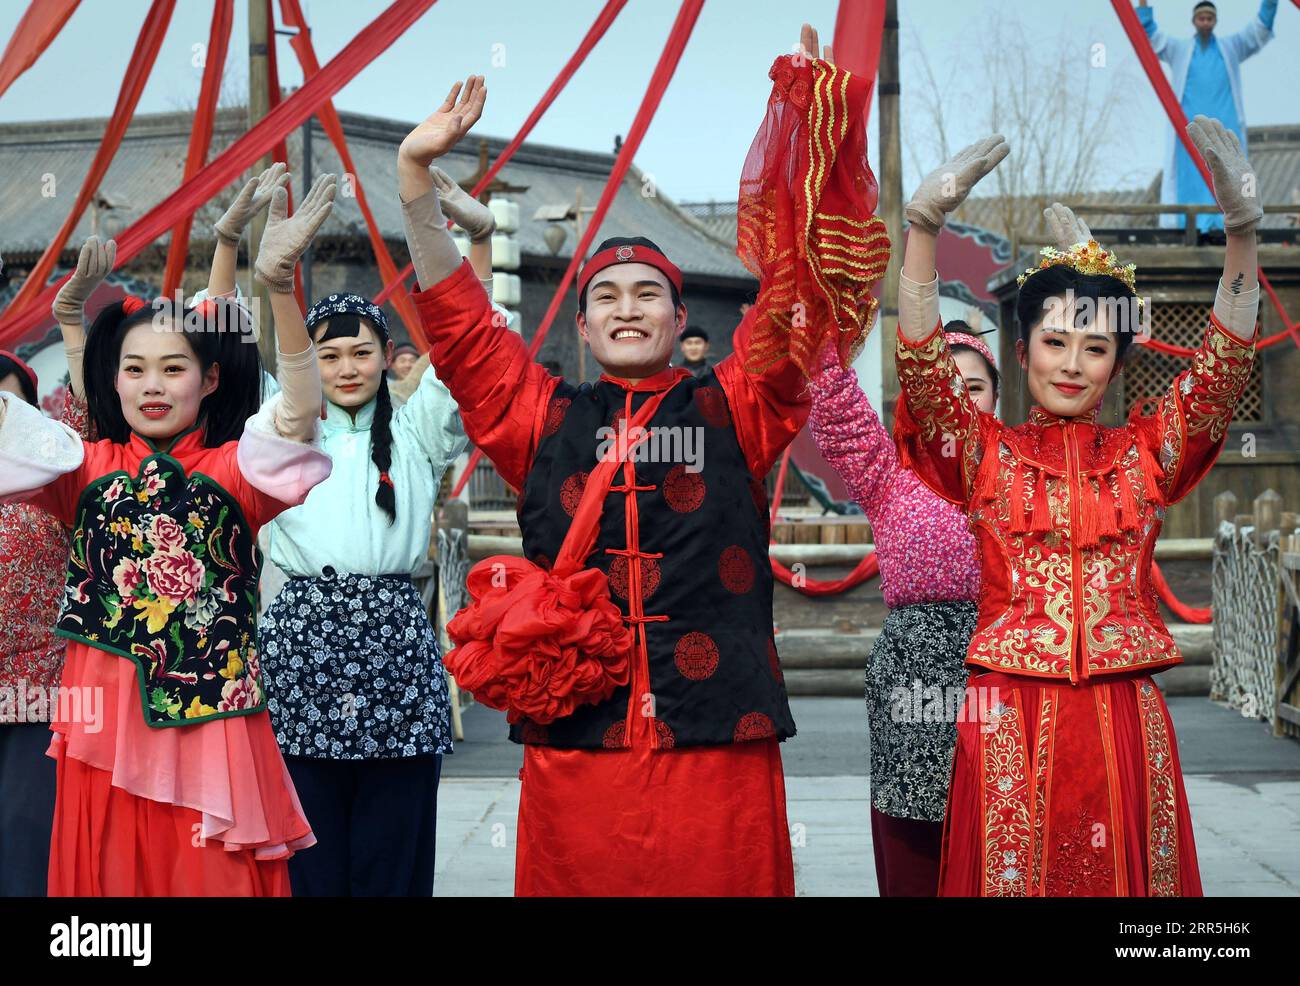 210107 -- ZHENGZHOU, 7. Januar 2021 -- Zhou Xin C, begrüßt das Publikum nach einer Aufführung in einer Filmstadt in Zhengzhou, zentralchinesische Provinz Henan, 5. Januar 2021. Zhou Xin, nach den 95er Jahren Absolvent des Choreographie-Hauptstudiums der Sichuan Normal University, verließ seine Heimatstadt in der Provinz Shanxi und arbeitete im April 2020 in der Jianye & H. Brothers Movie Town in Zhengzhou, aus tiefer Leidenschaft für Film und Schauspiel. Vom Make-up bis zur Kostümvorbereitung, von der Probe bis hin zur formellen Vorstellung – Zhou ist mit jedem Detail gewissenhaft. Zhou gehört zu den 185 Schauspielern und Schauspielerinnen wie er, die ihren Träumen nachjagen Stockfoto